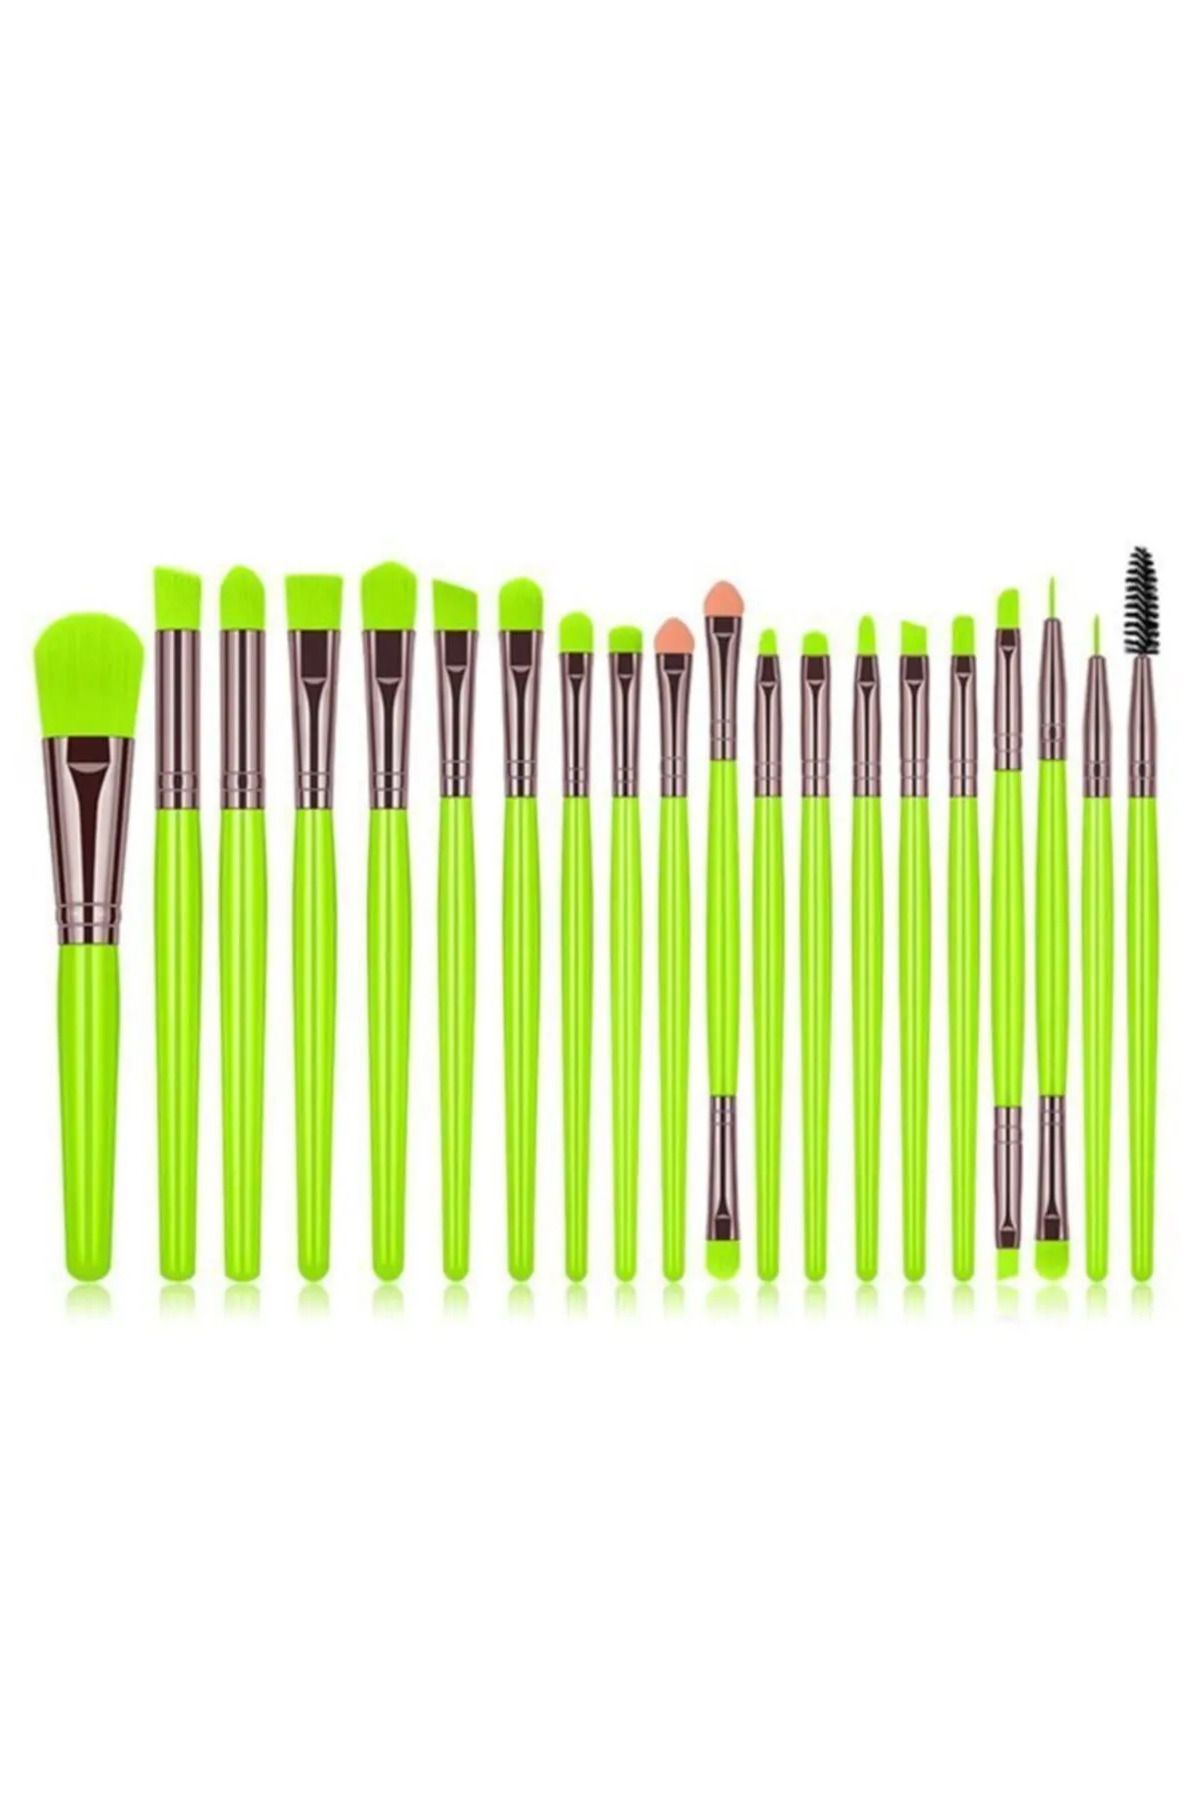 aks kozmetik Yeşil renk 20 Parça Makyaj Fırça Seti Neon Renkler